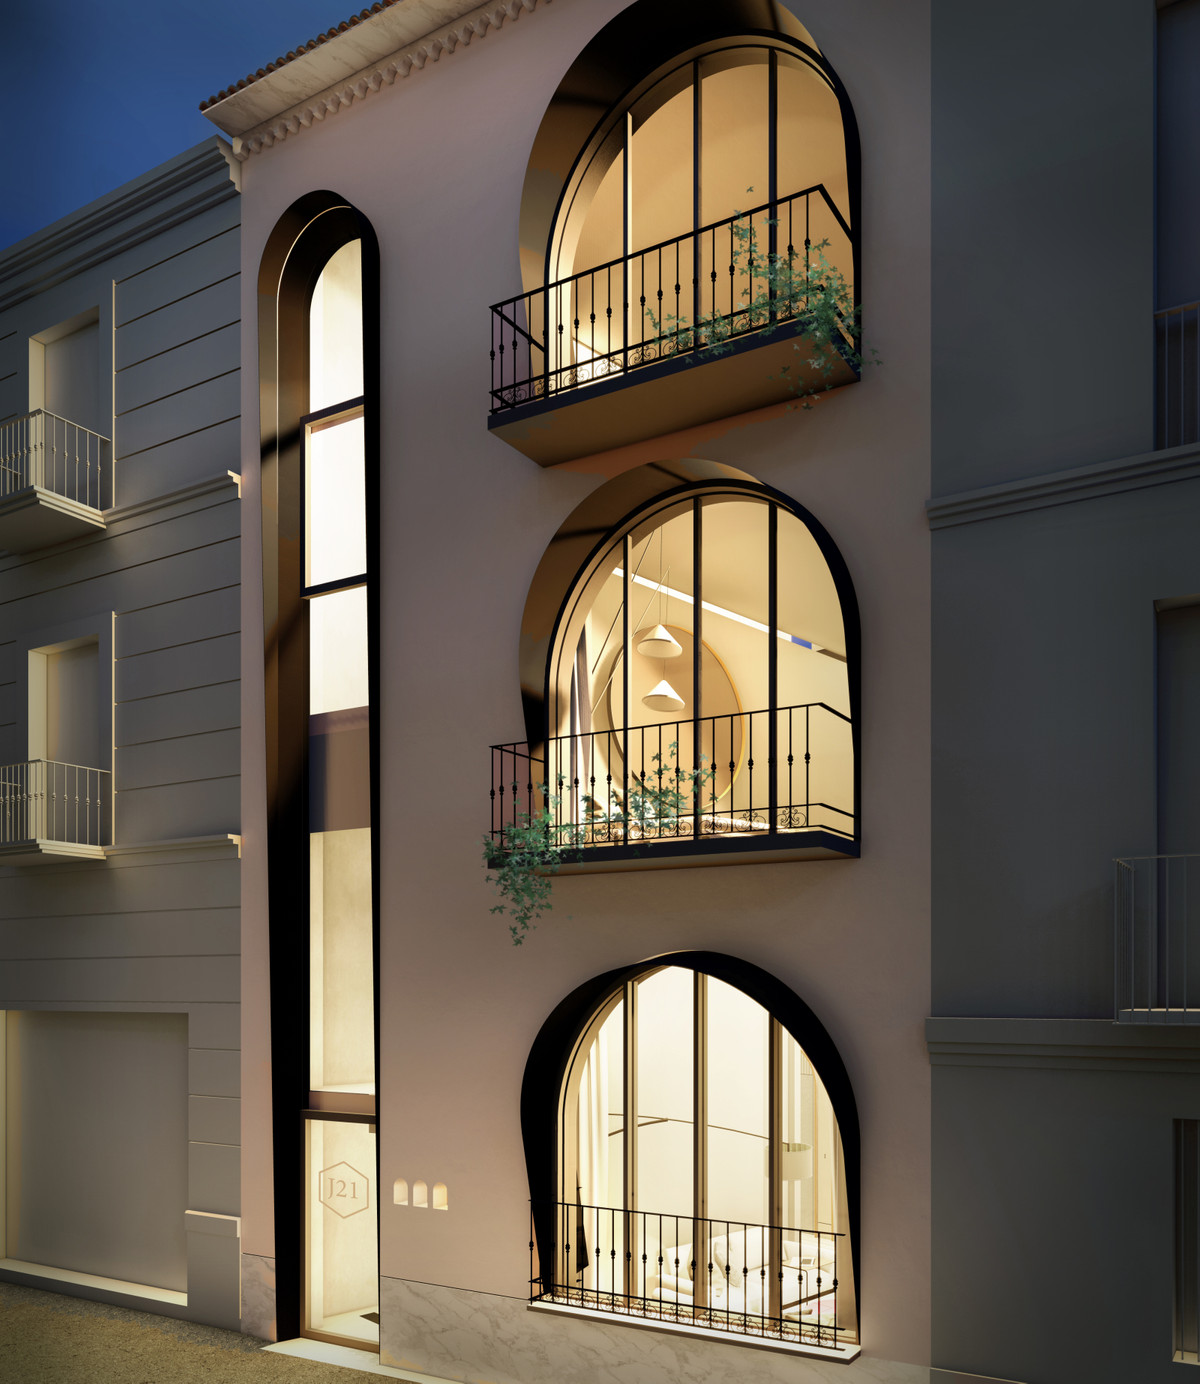 						Apartamento  Planta Baja
													en venta 
																			 en Malaga Centro
					